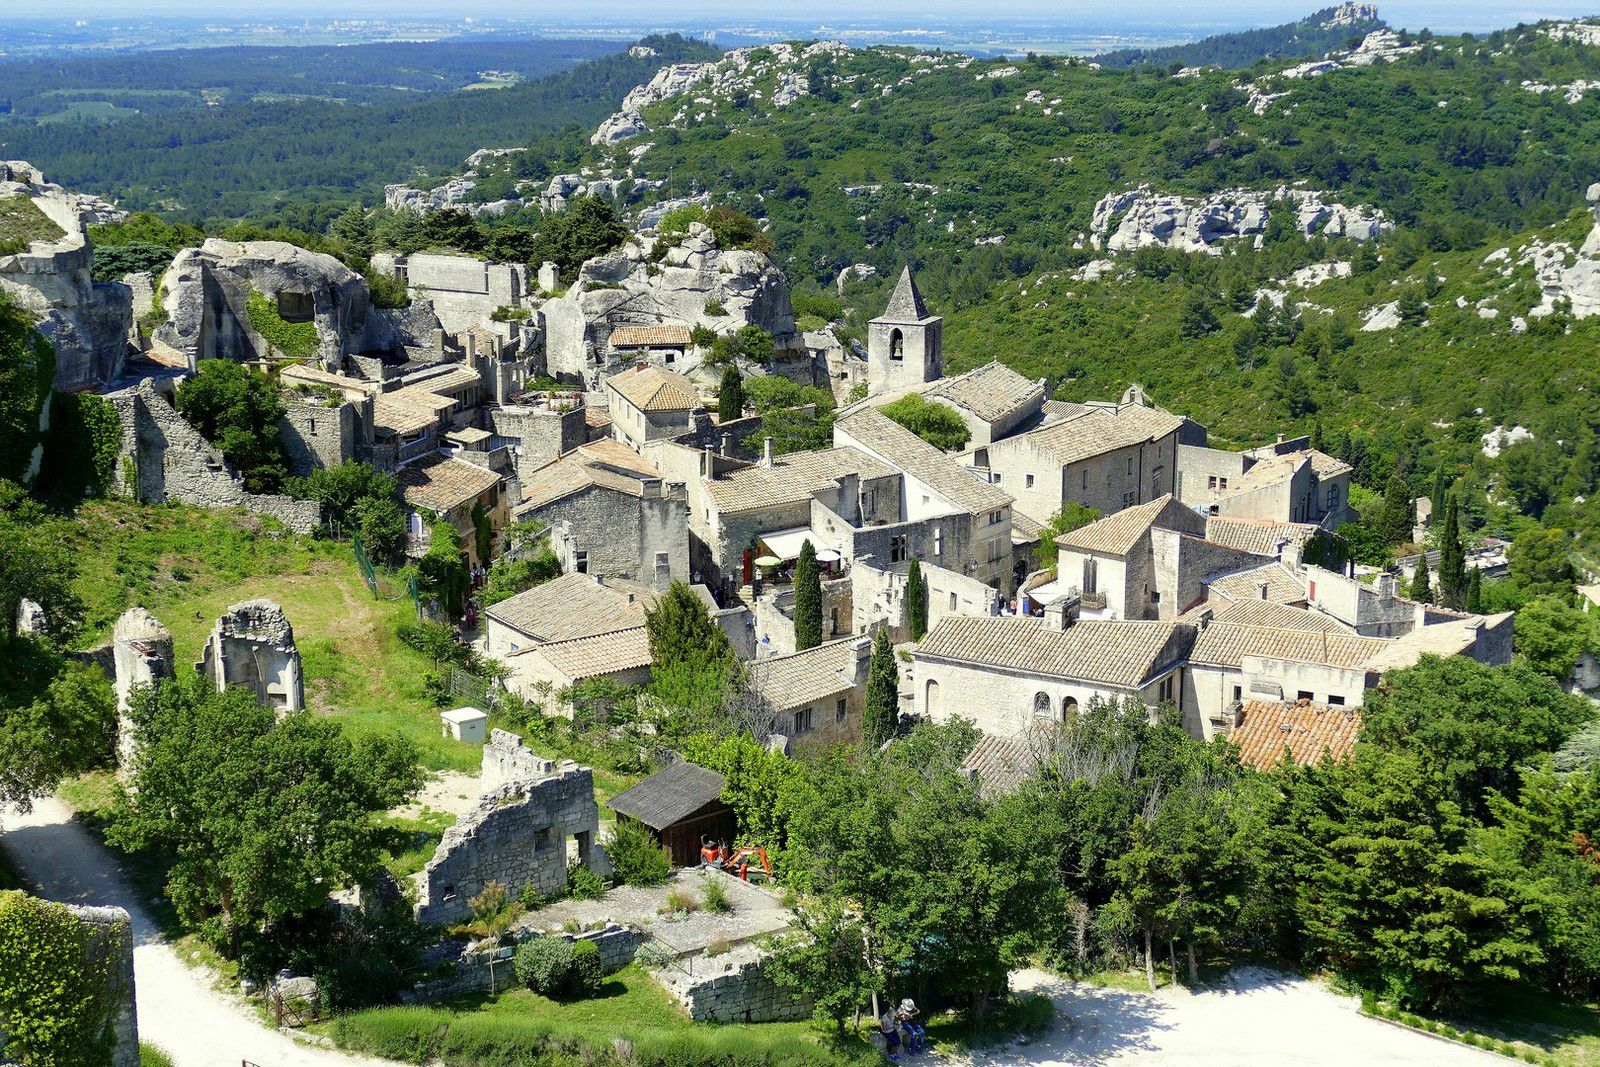 Paysage et panorama exceptionnel sur la Provence (mai 2018, images personnelles)